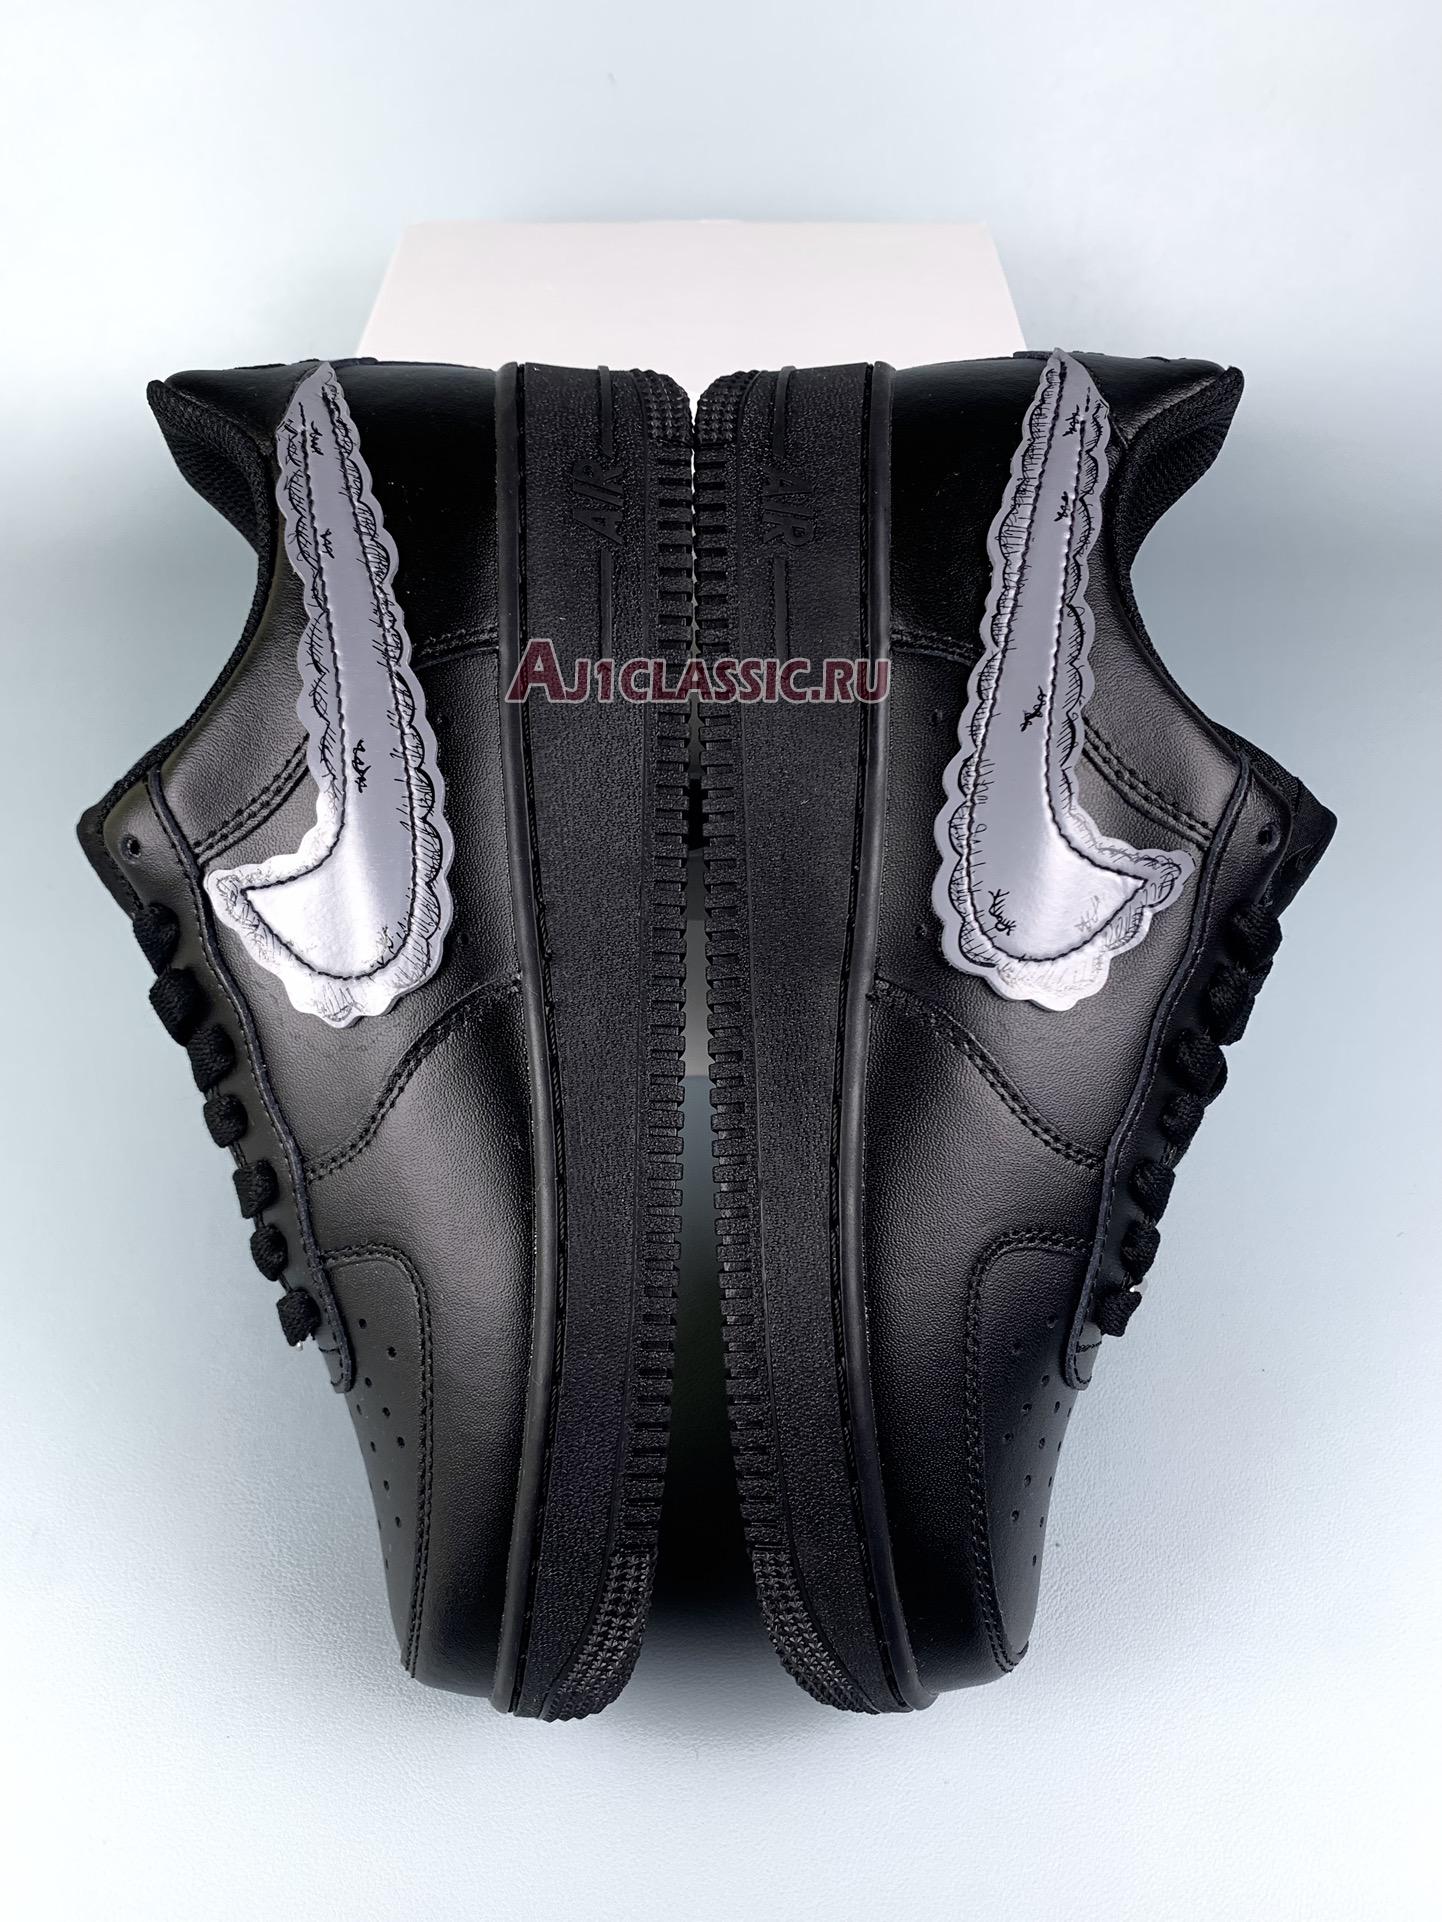 KAWS x Sky High Farm Workwear x Nike Air Force 1 "Black" KAWSSKYHIGHAF1-BLK